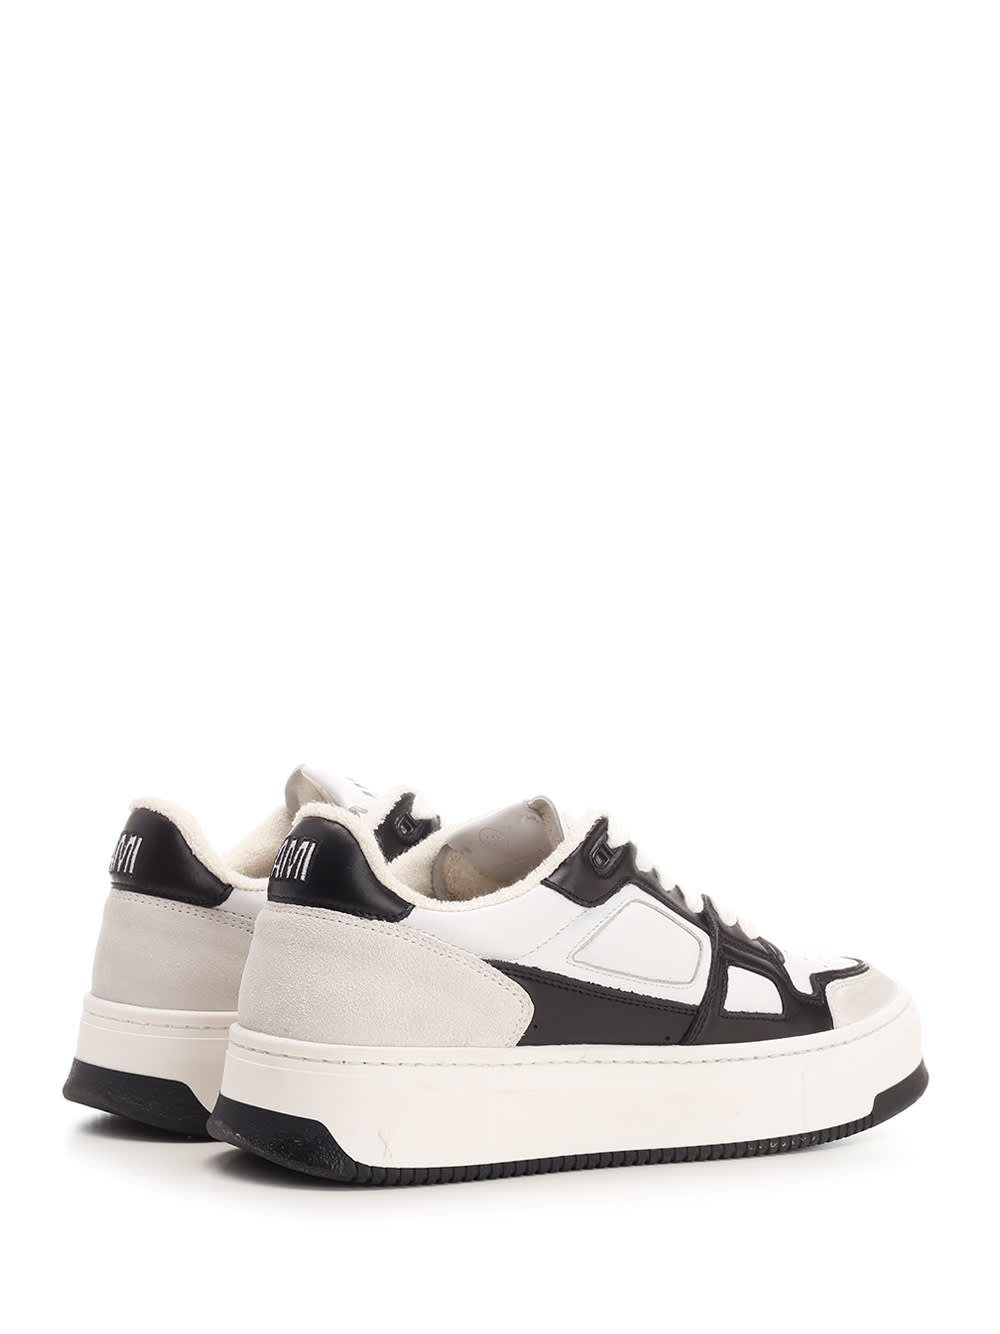 Shop Ami Alexandre Mattiussi Arcade Sneakers In White/black